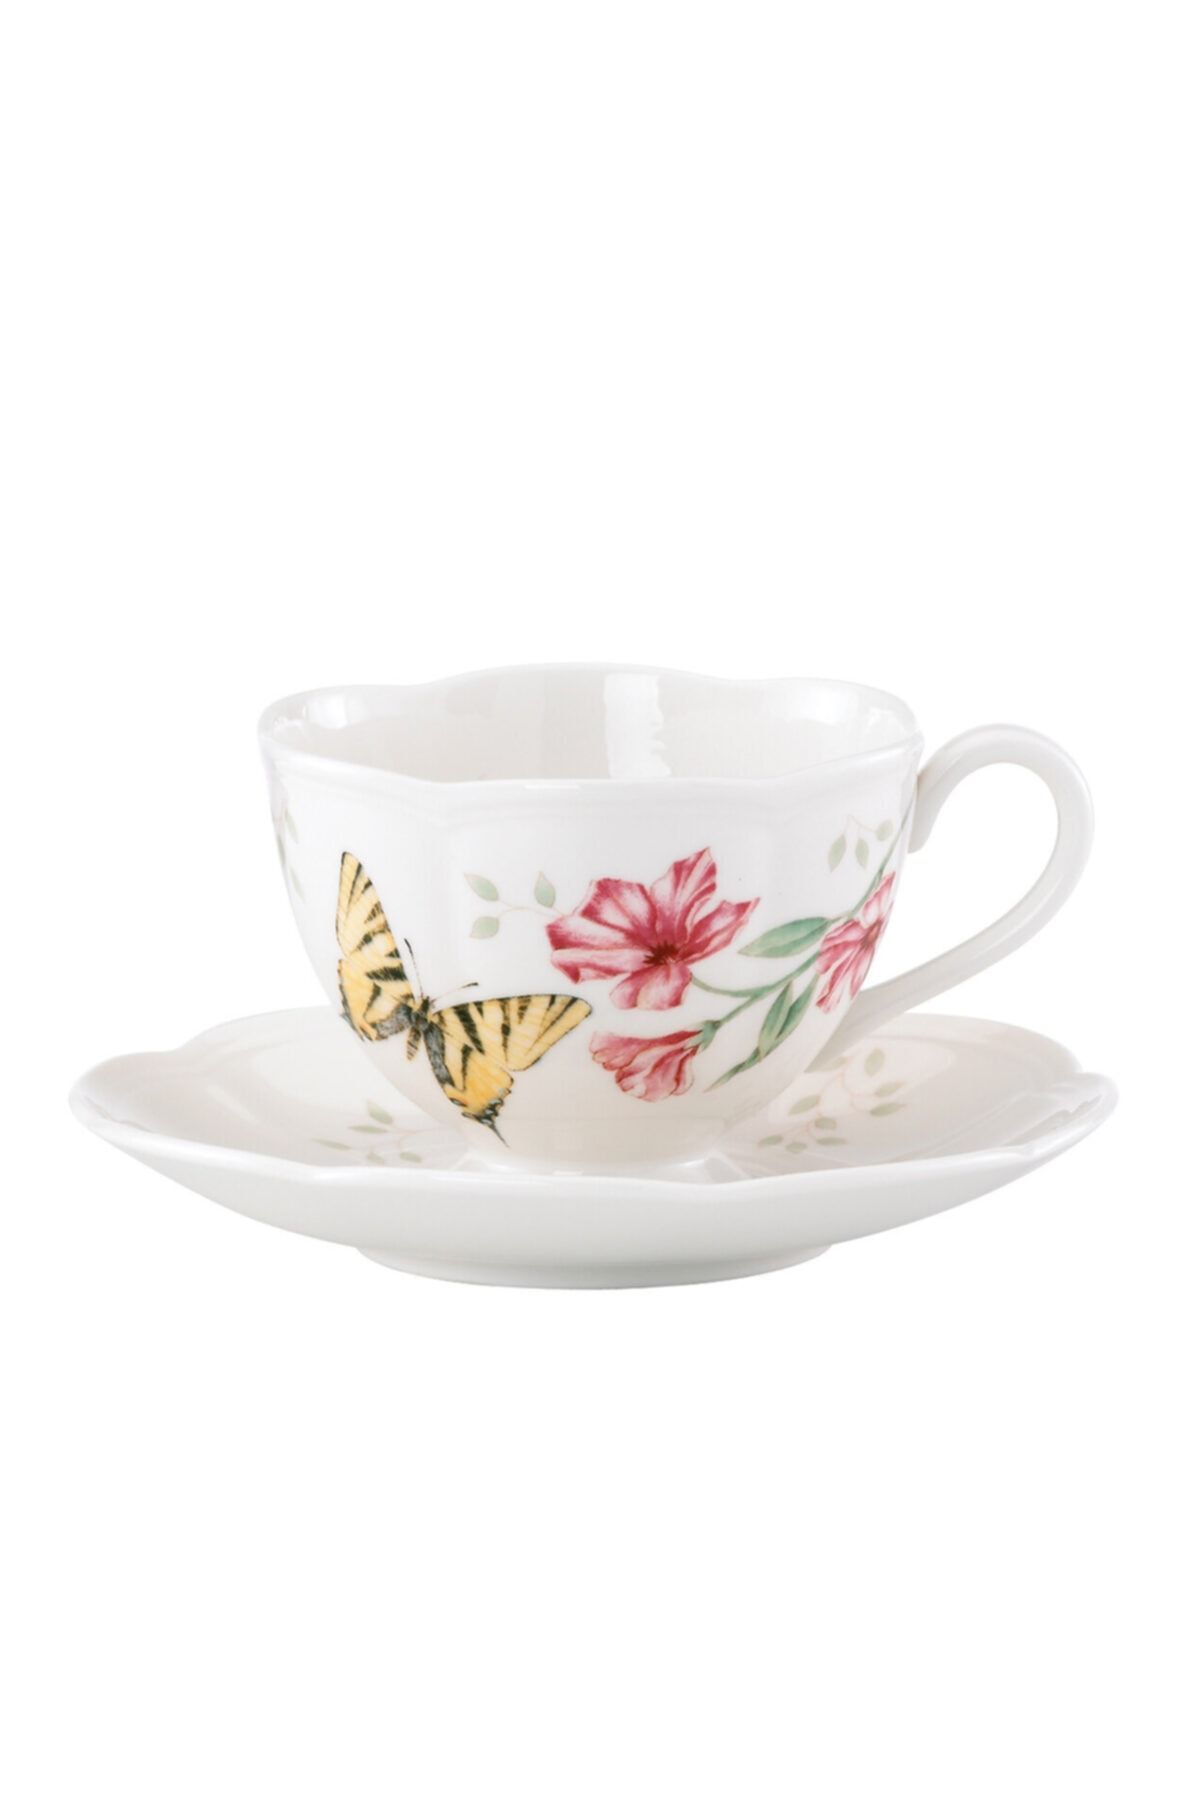 Lenox Butterfly Kahve/çay Fincan Ve Tabağı